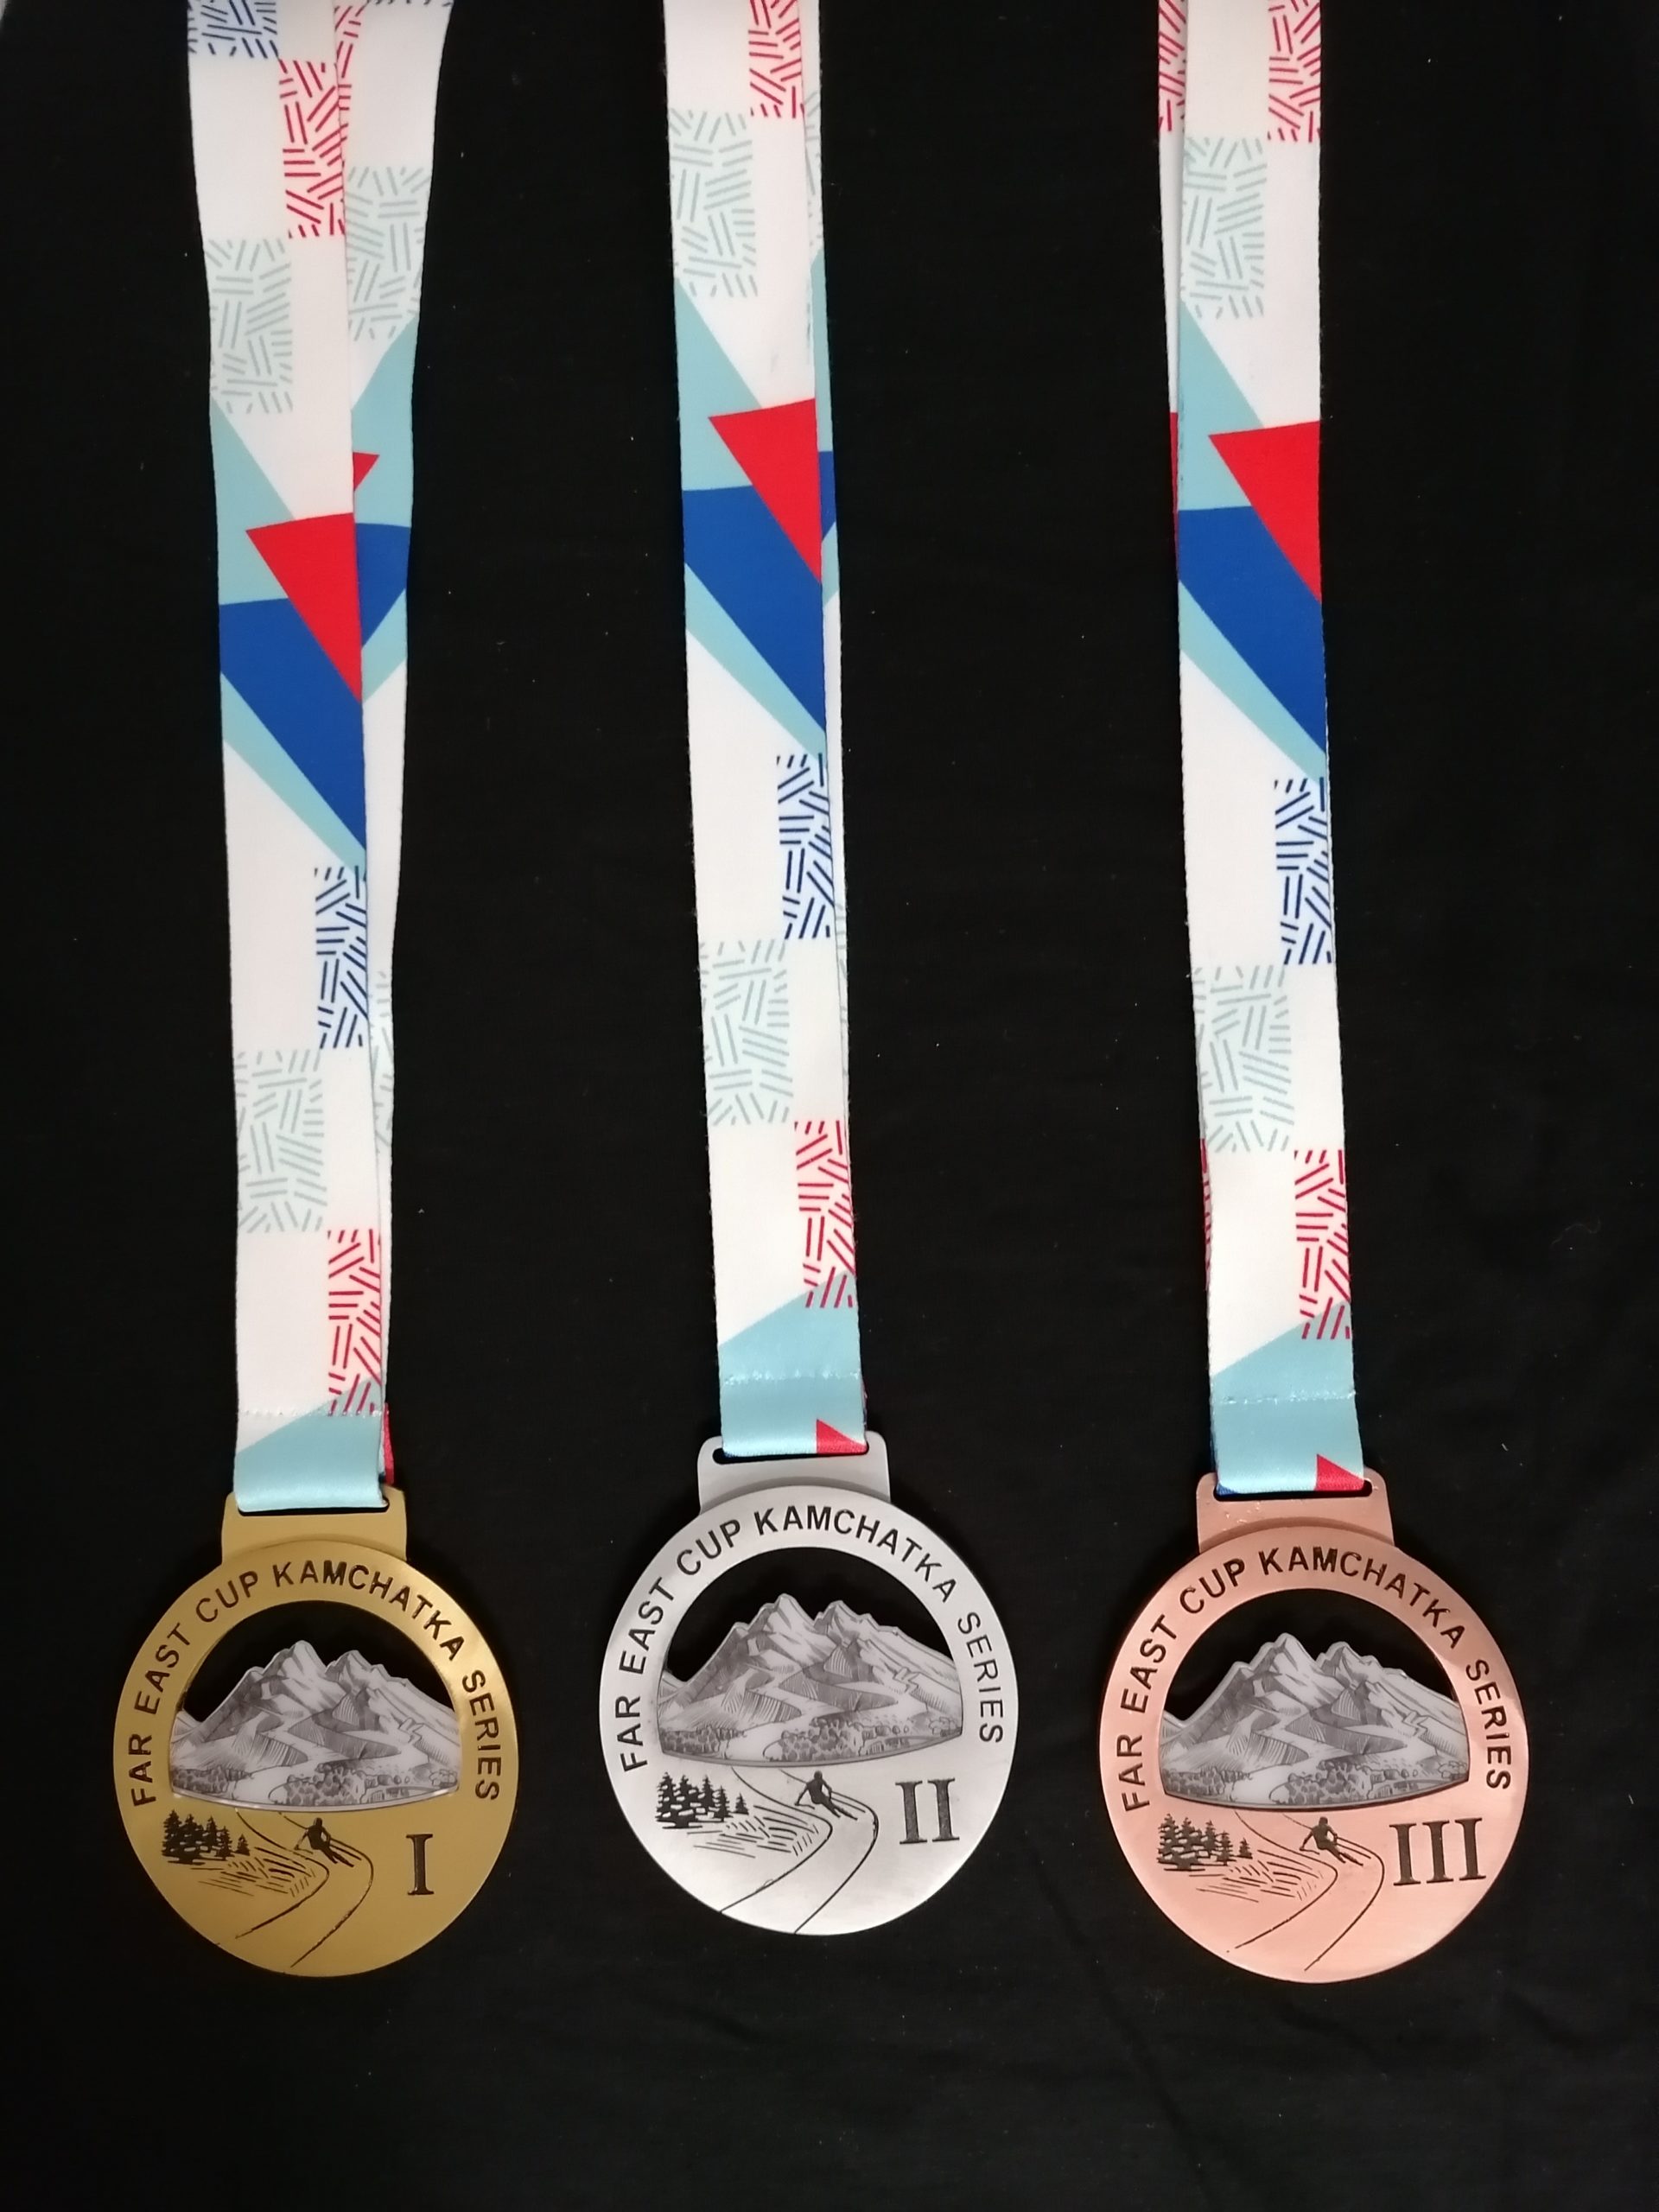 Ленты с медалями для спорта - 1,2,3 места